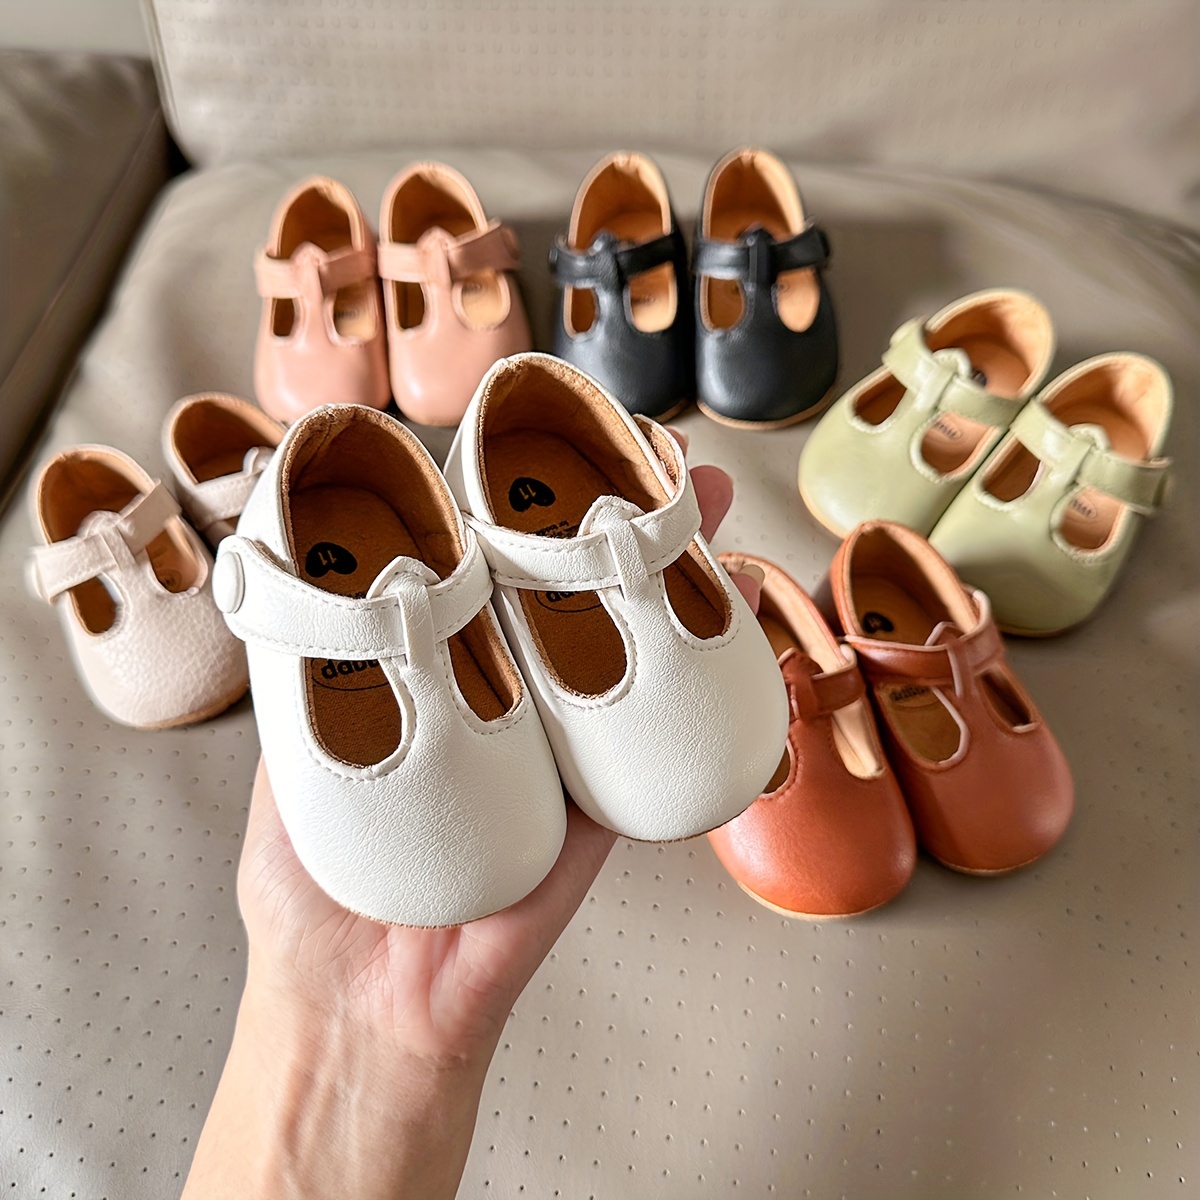 Zapatos para Bebé Niña